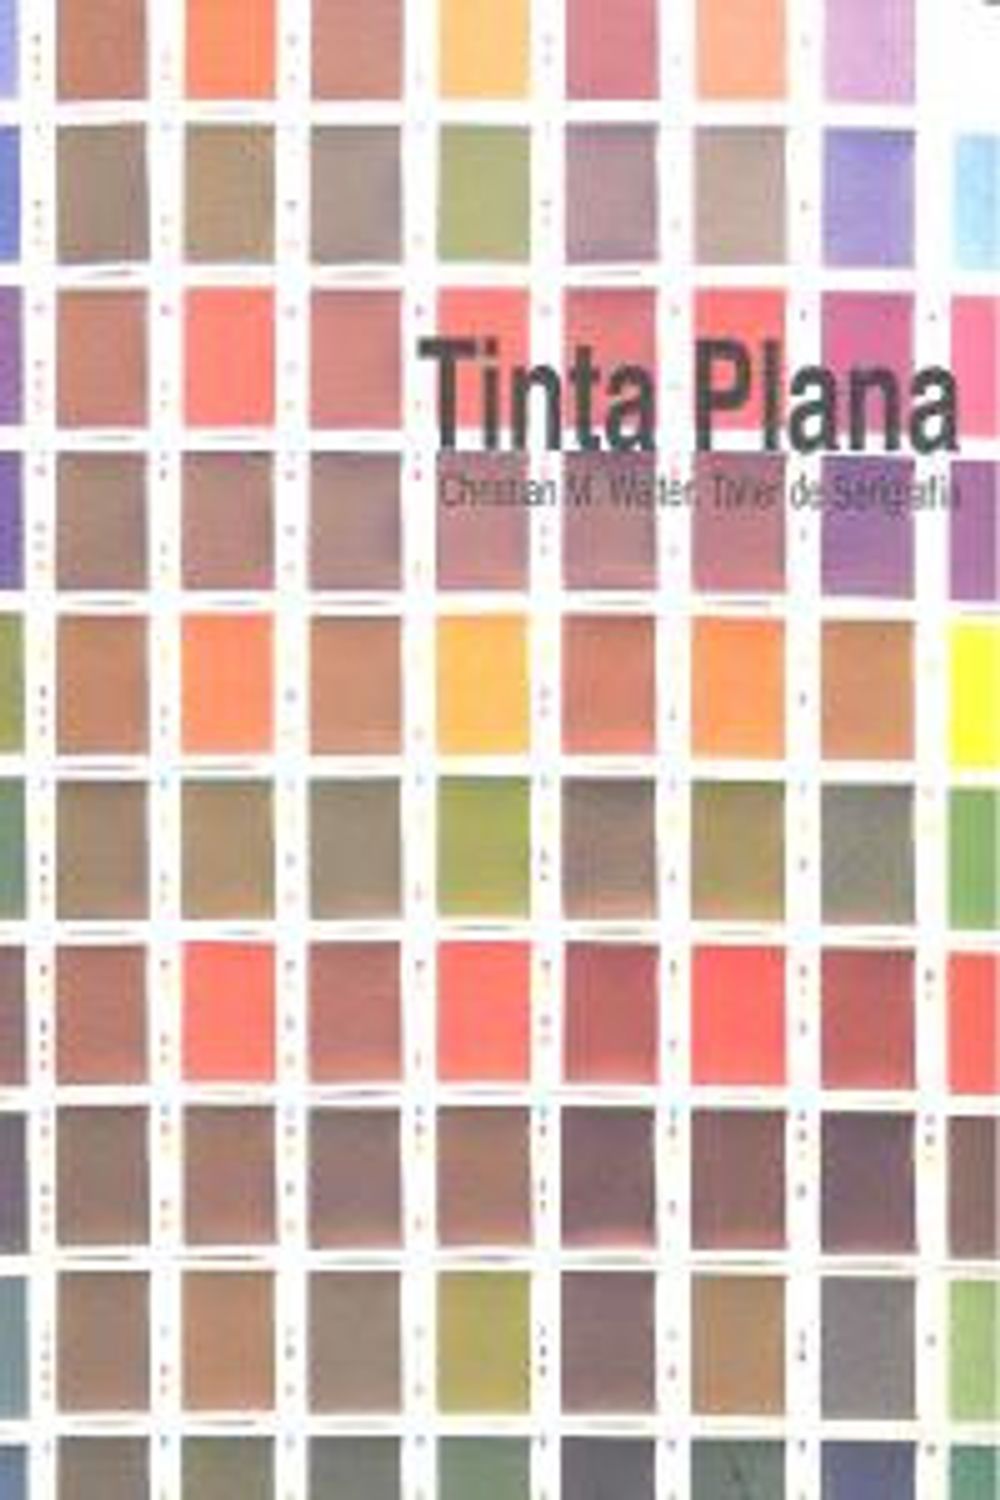 Tinta Plana